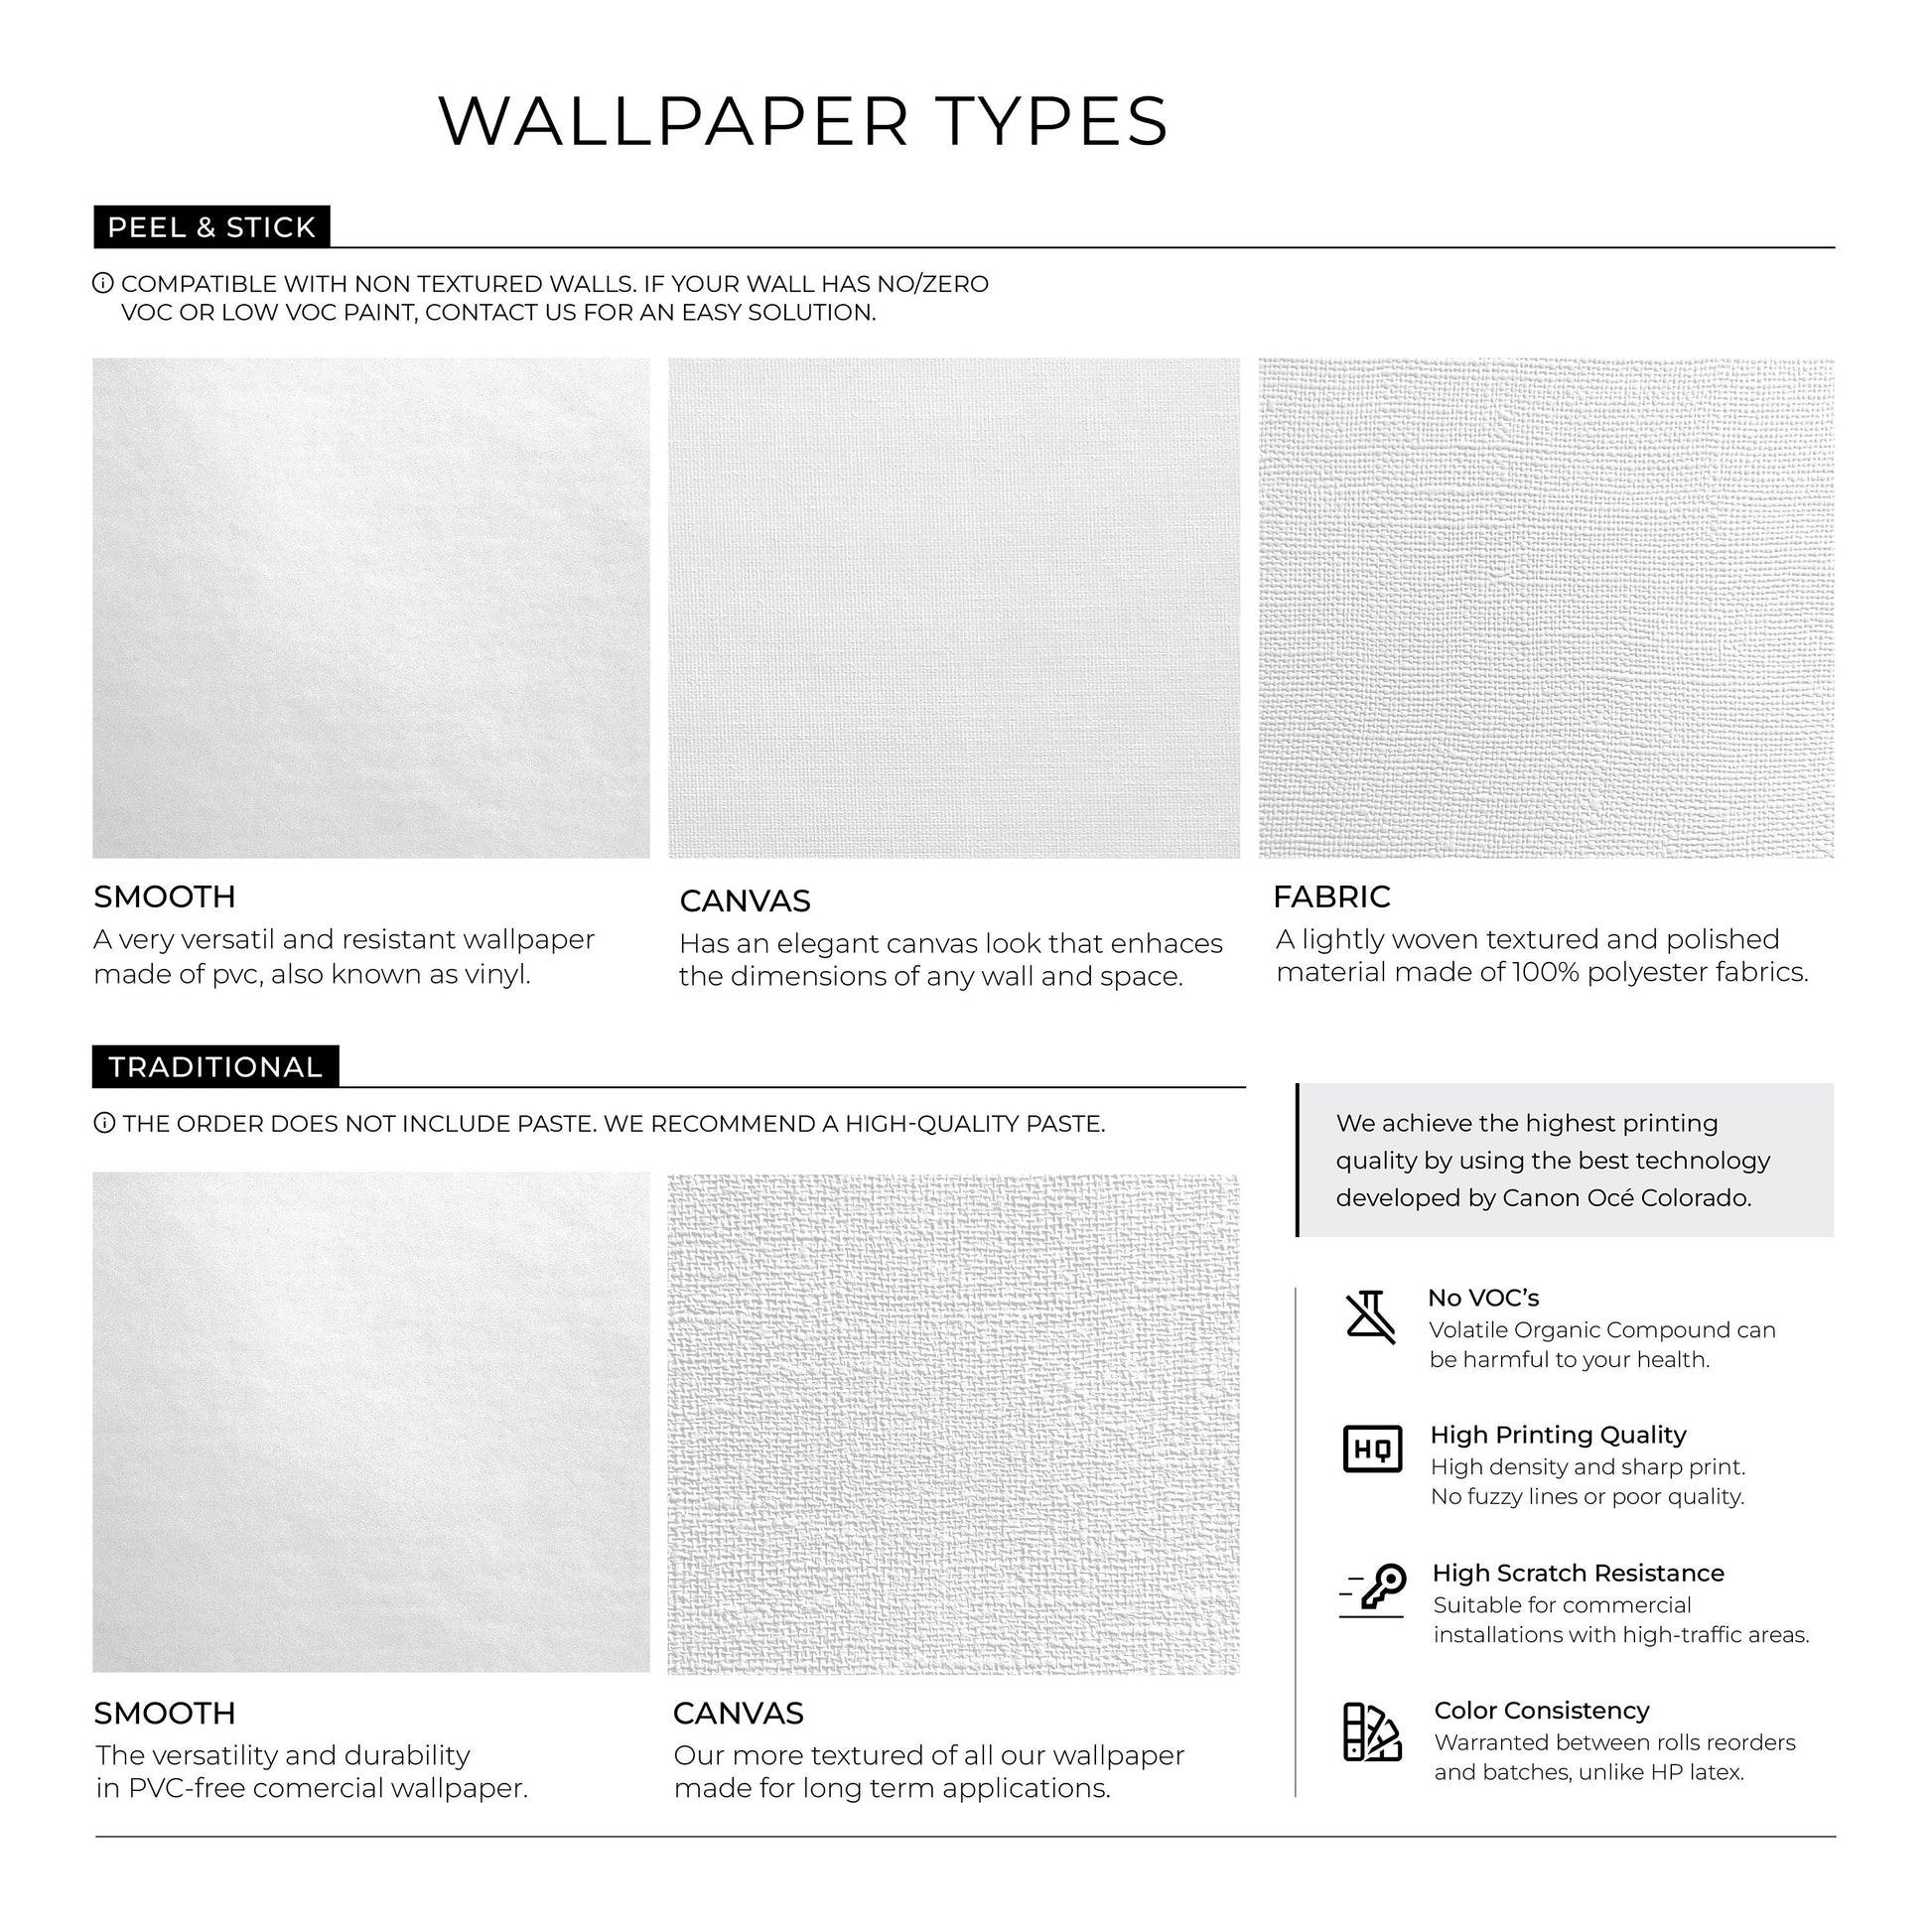 Monstera Wallpaper, Wallpaper, Self-Adhesive, Removable Wallpaper, Leaf Wallpaper, Mural Wallpaper - B533